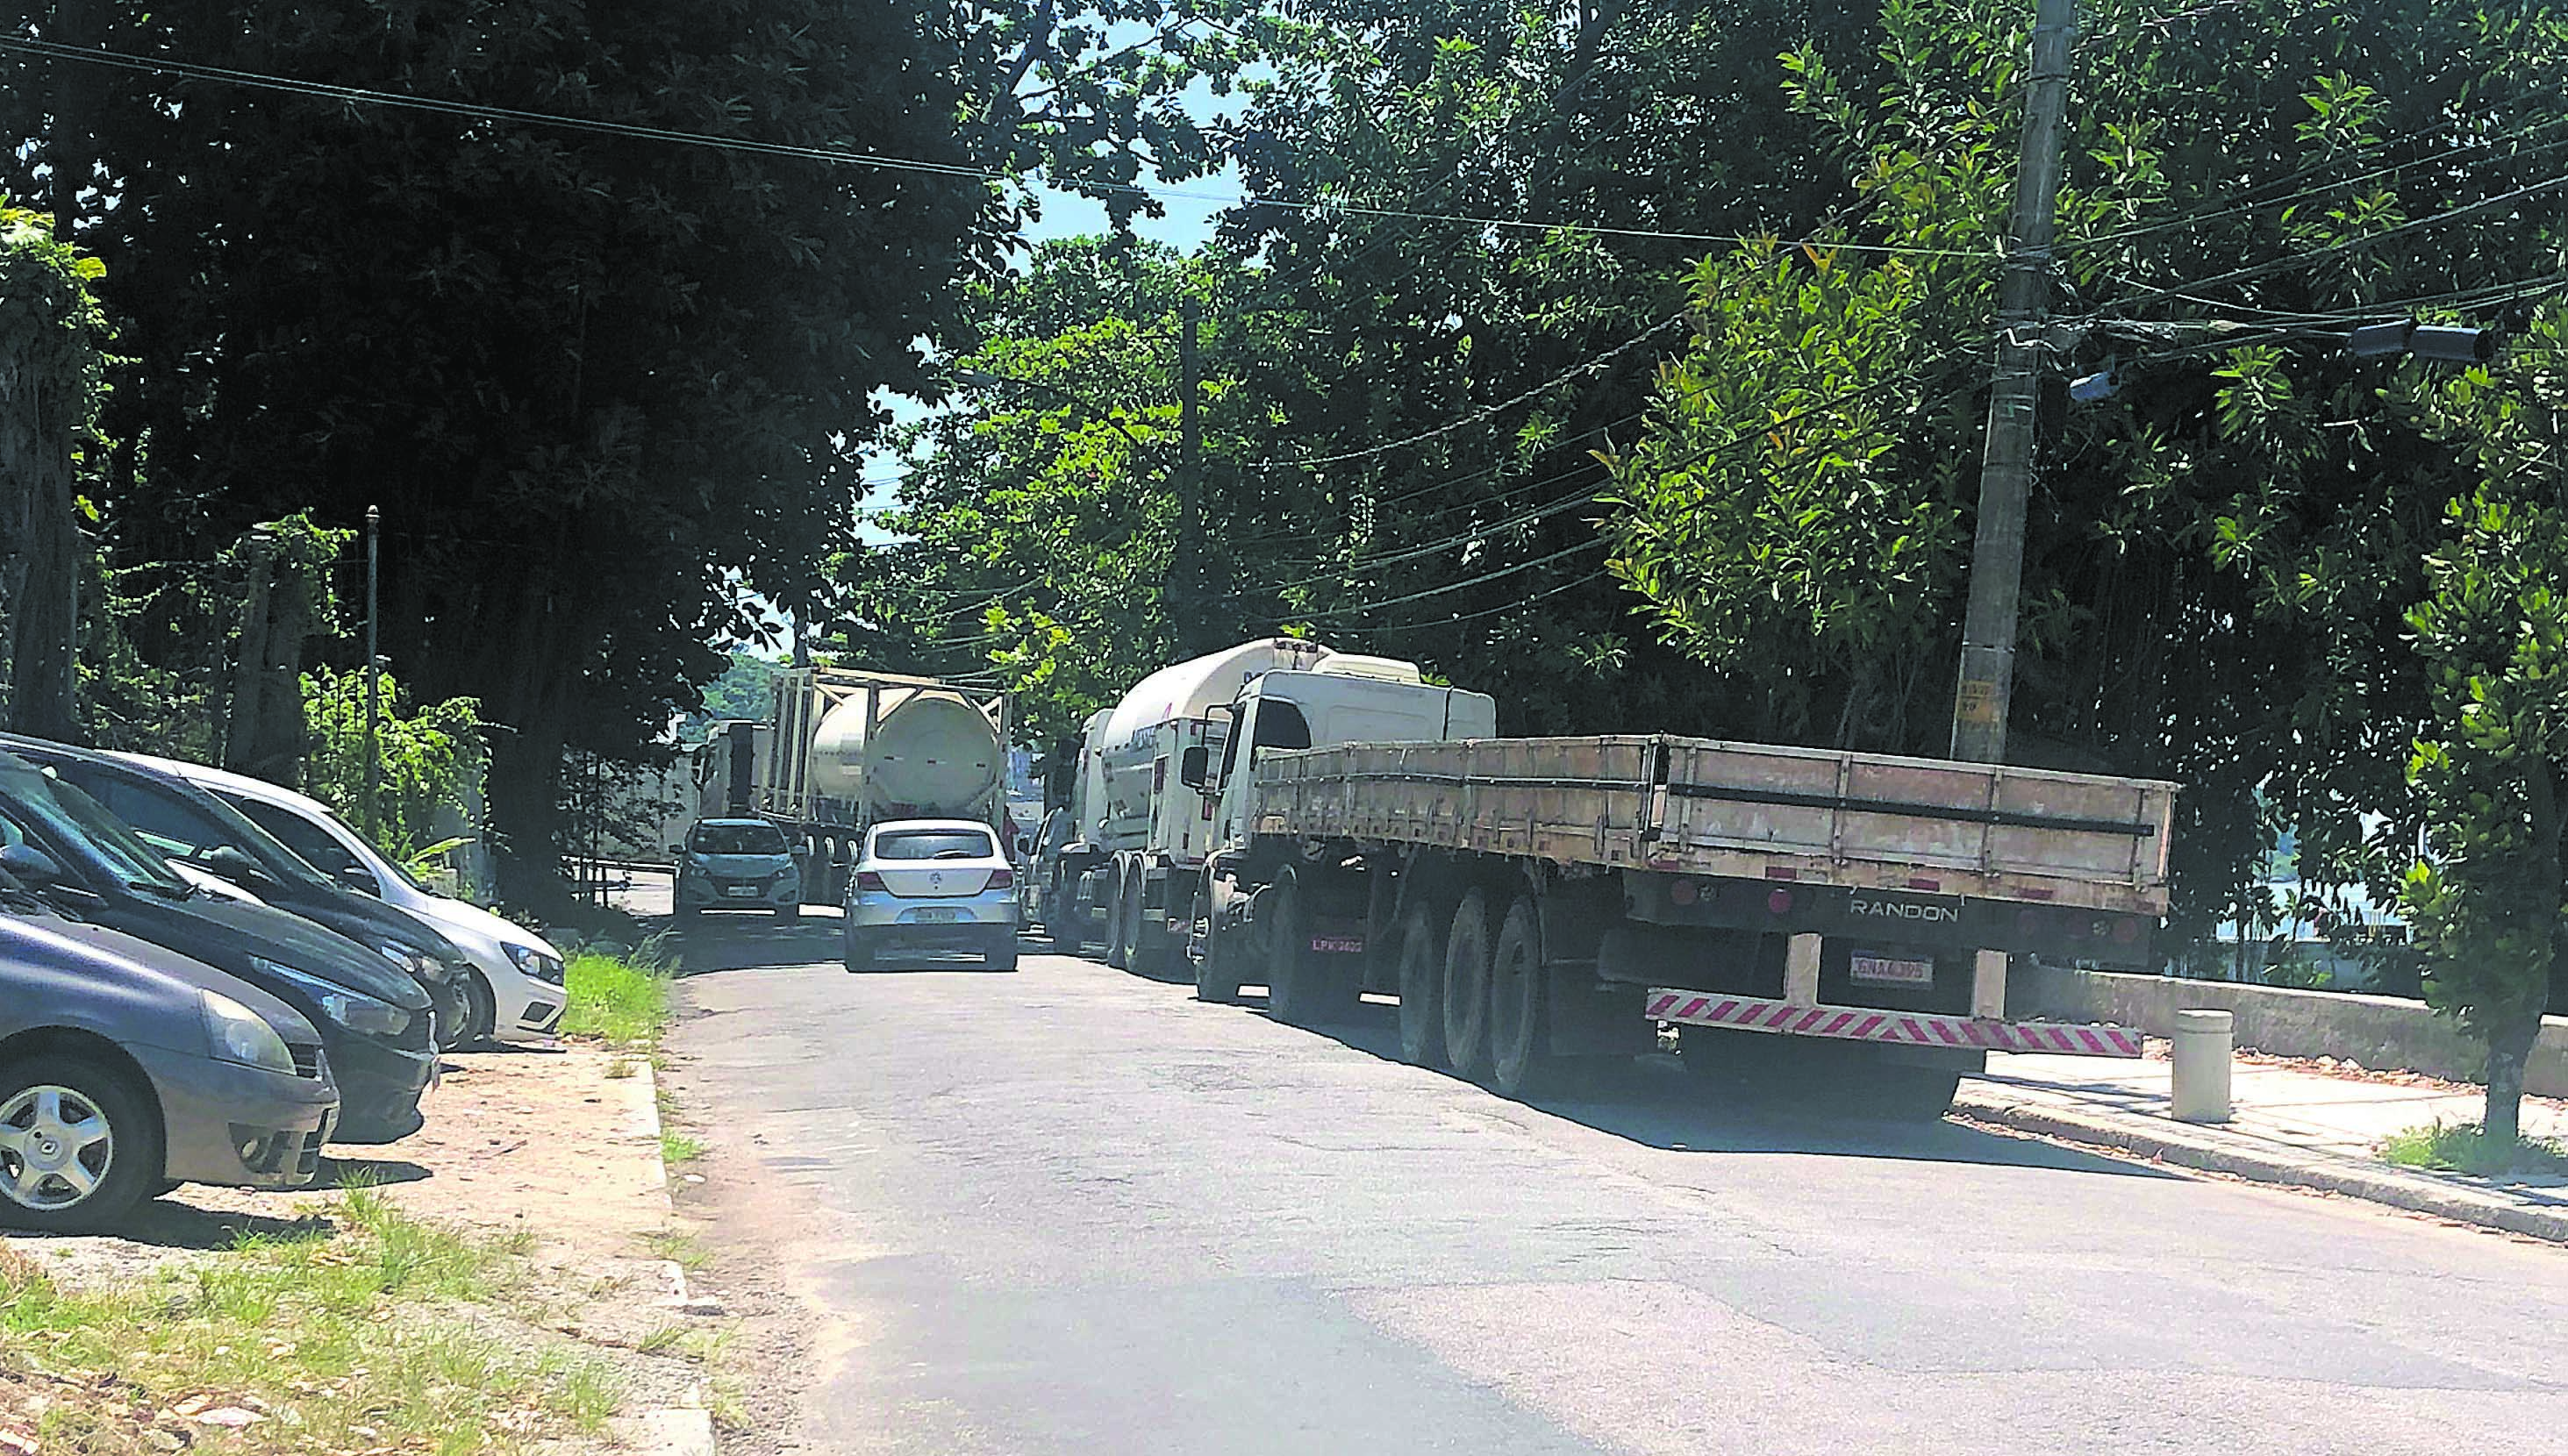 Caminhões esperando balsa para a Ilha D´Água (Transpetro) estacionados na via de rolamento próximos a uma curva perigosa na Praia Congonhas do Campo